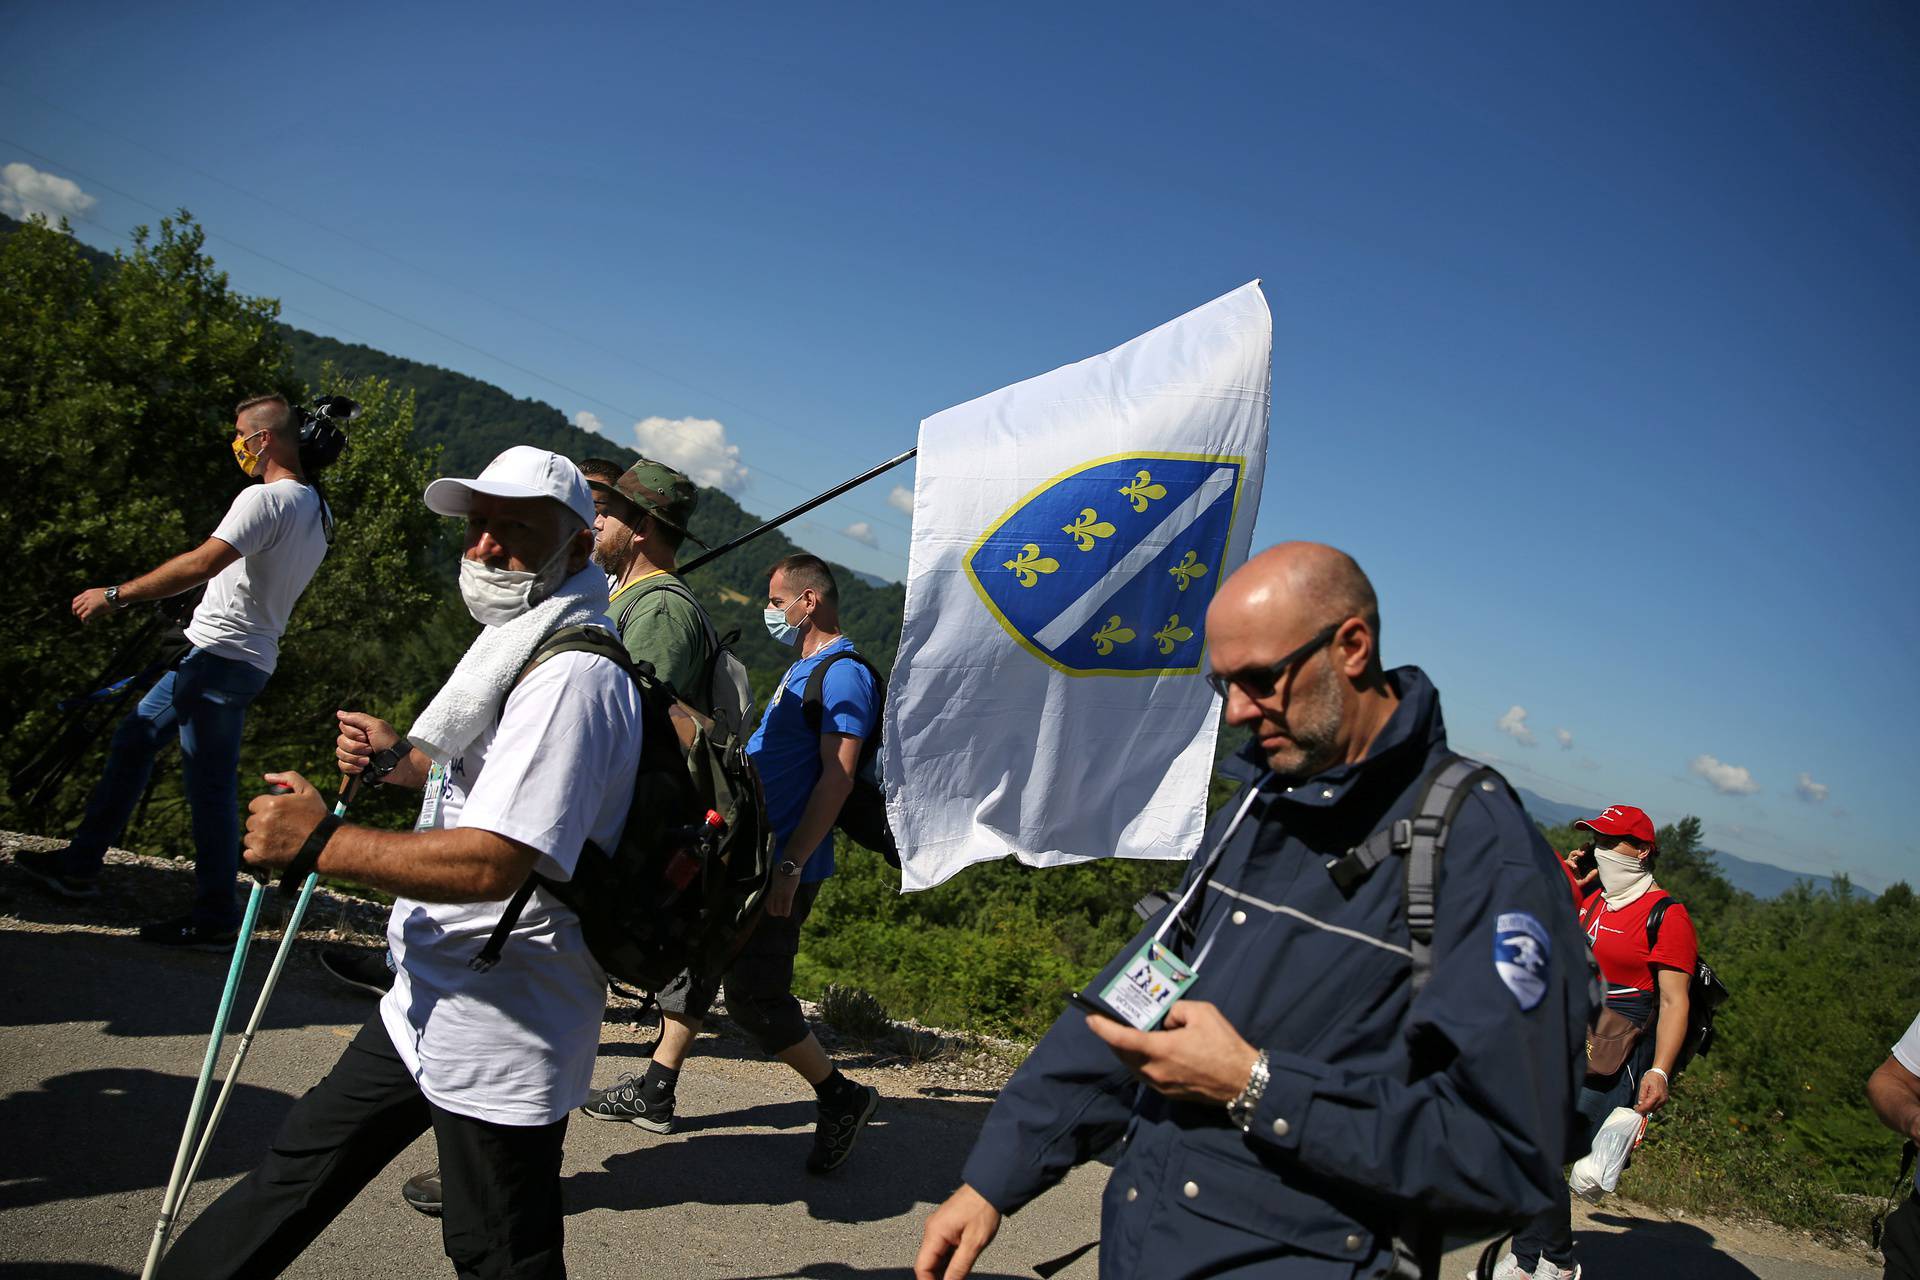 March commemorating the 25th anniversary of the Srebrenica massacre